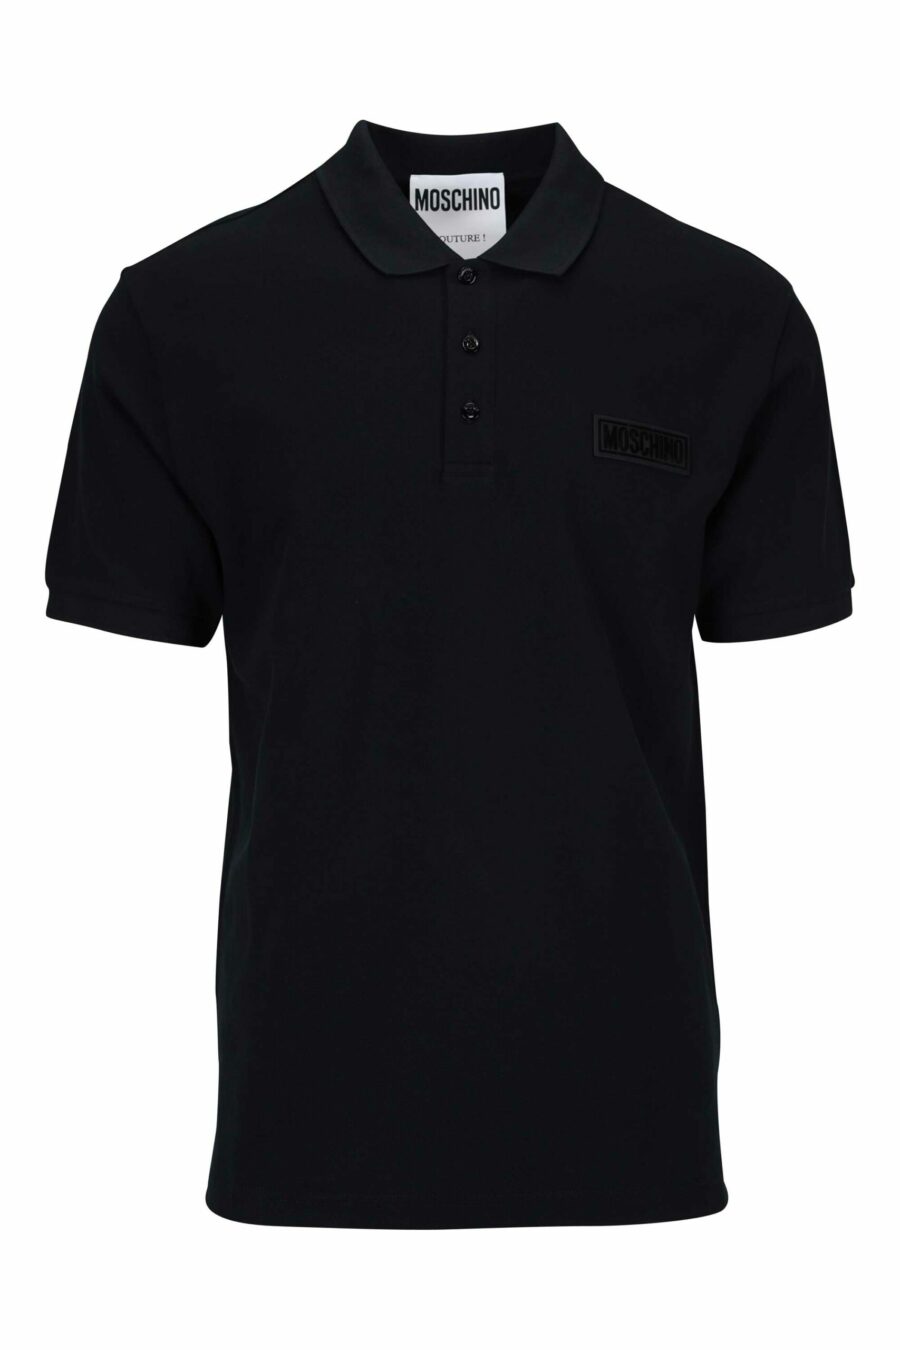 Polo noir avec étiquette mini-logo blanche - 667113402352 échelonné